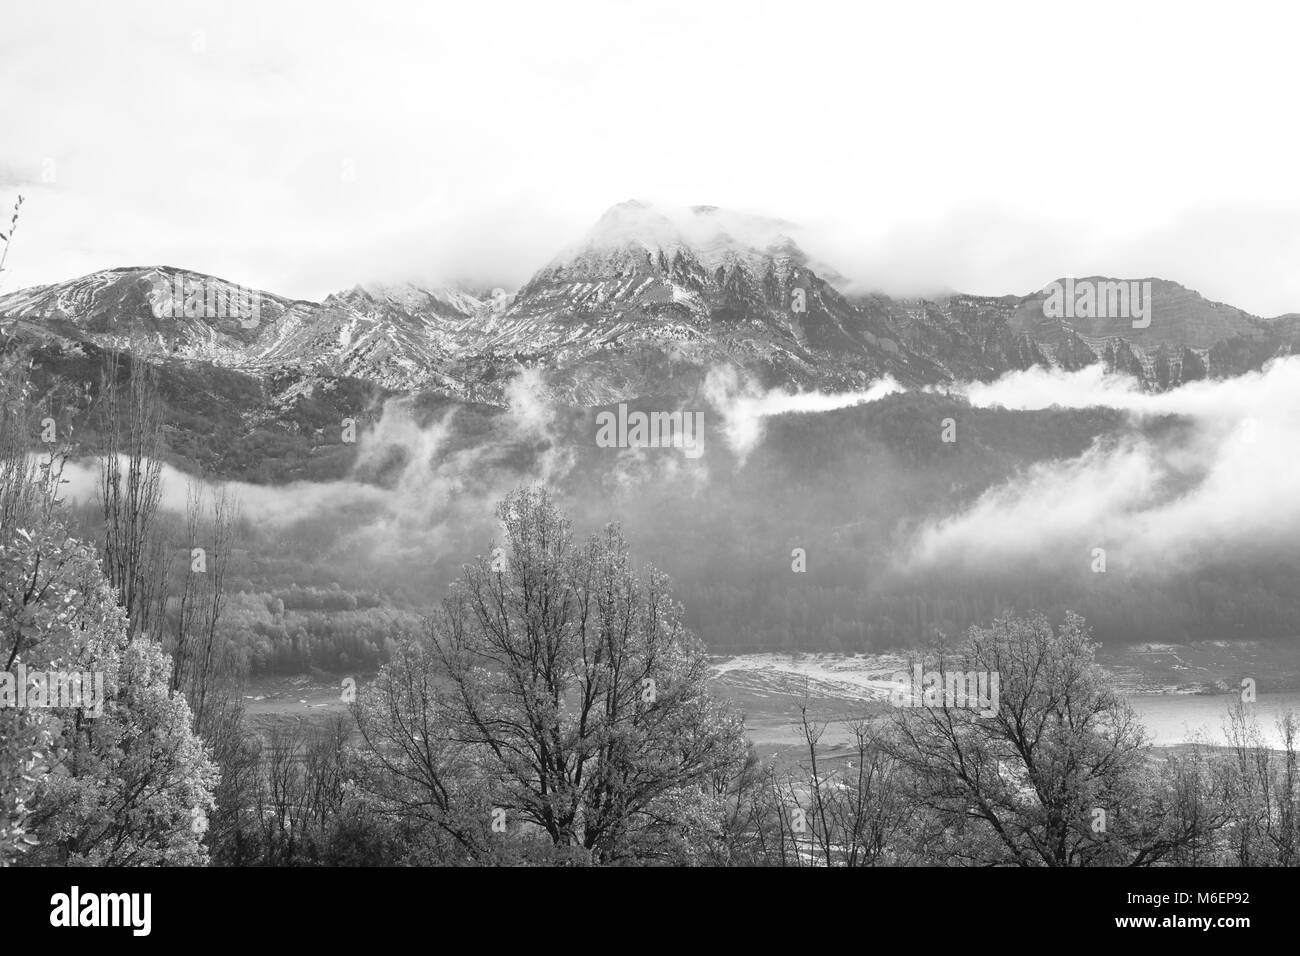 Brouillard dans la forêt avec des montagnes enneigées, la photographie noir et blanc Banque D'Images